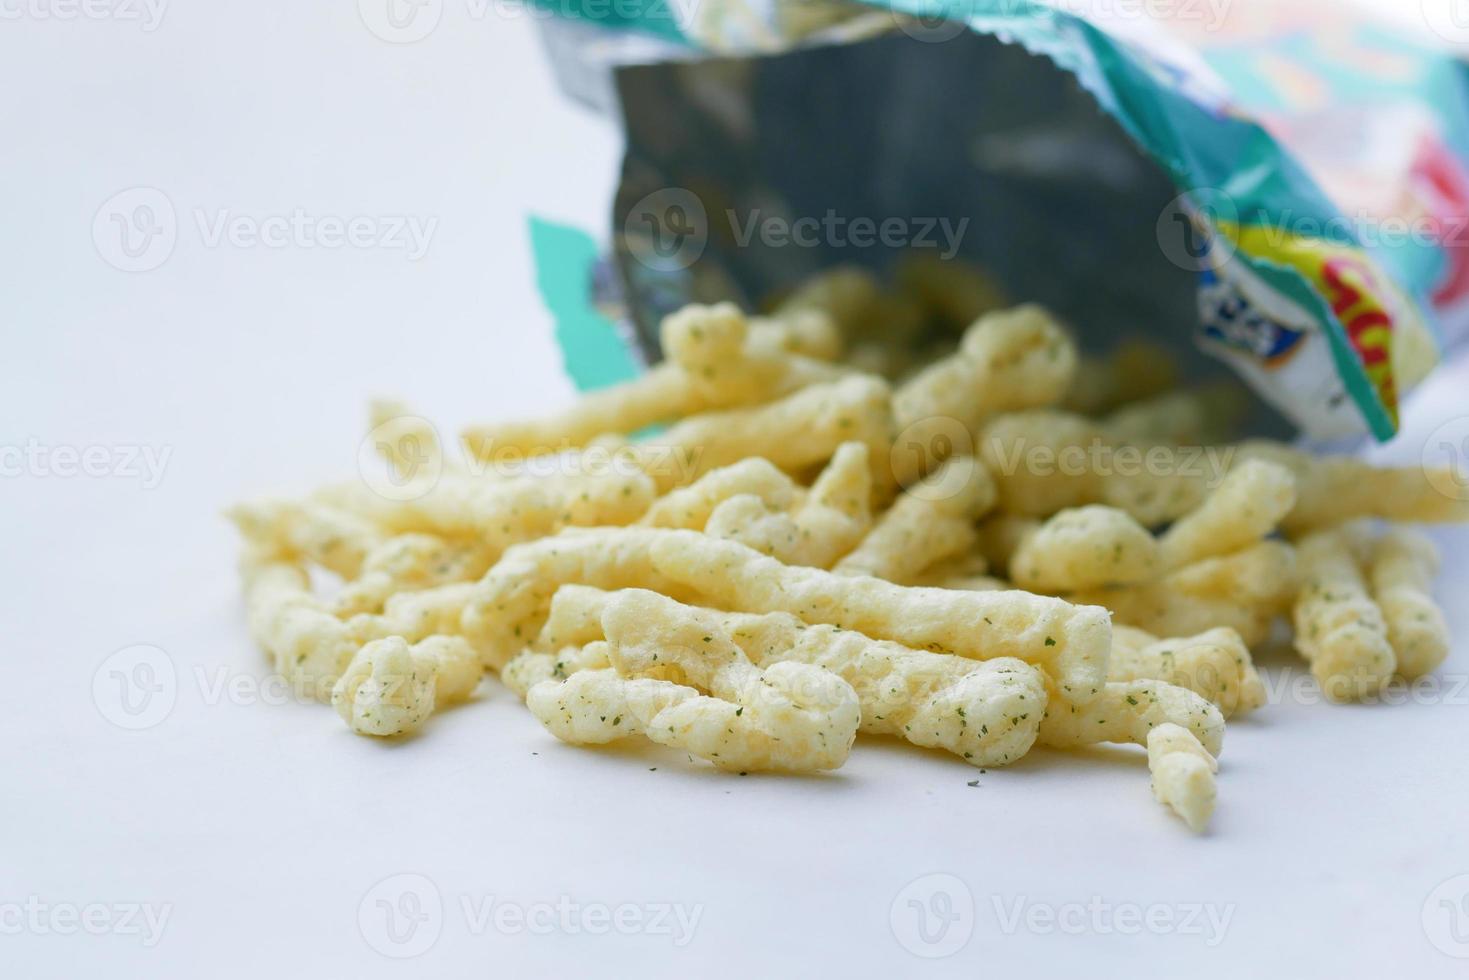 leckere kartoffelchips in einem paket auf weiß foto